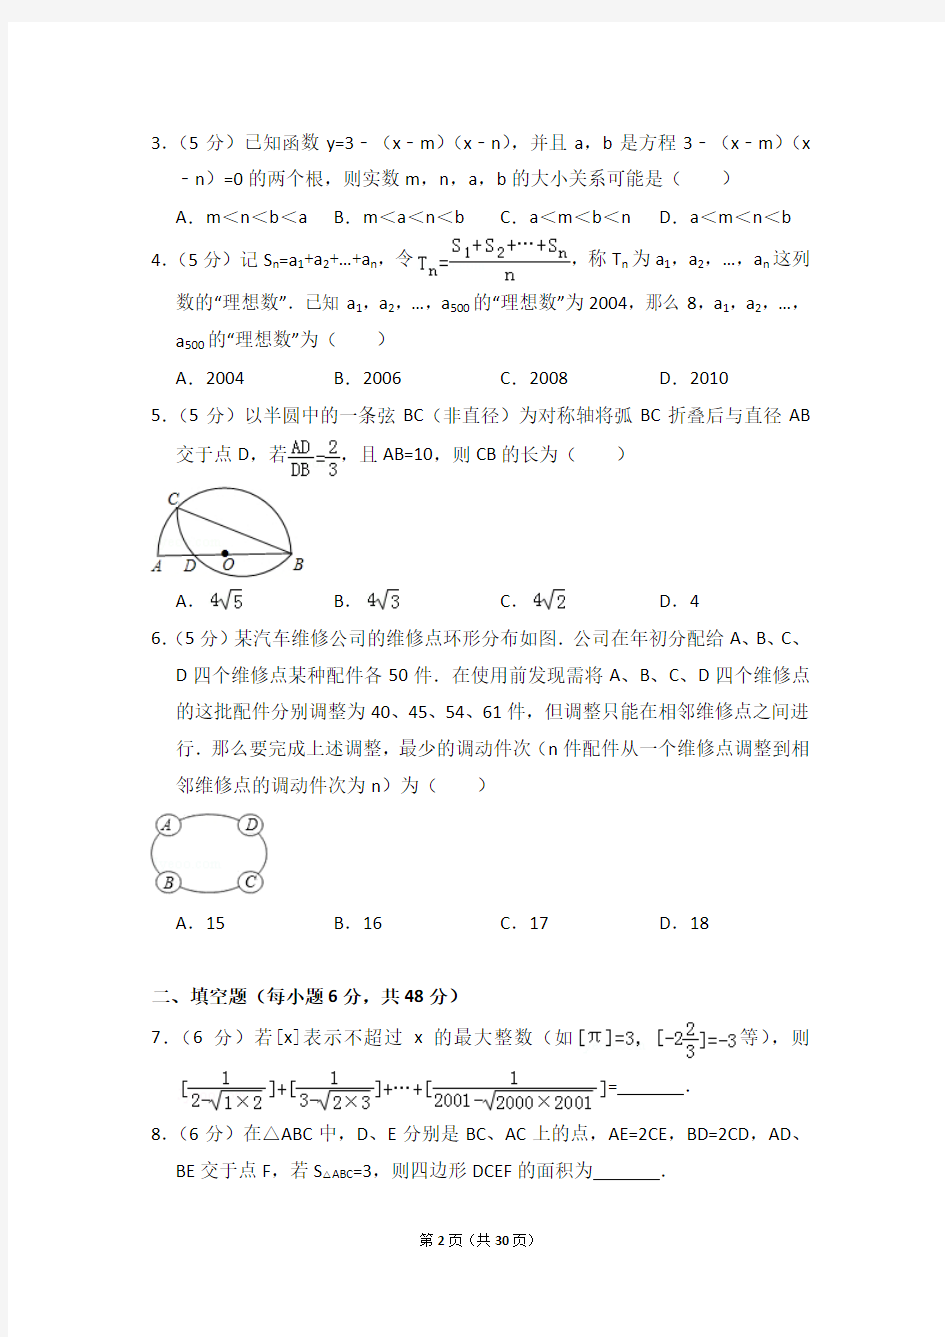 2014年湖南省长沙一中自主招生考试数学试卷及详细试卷解析